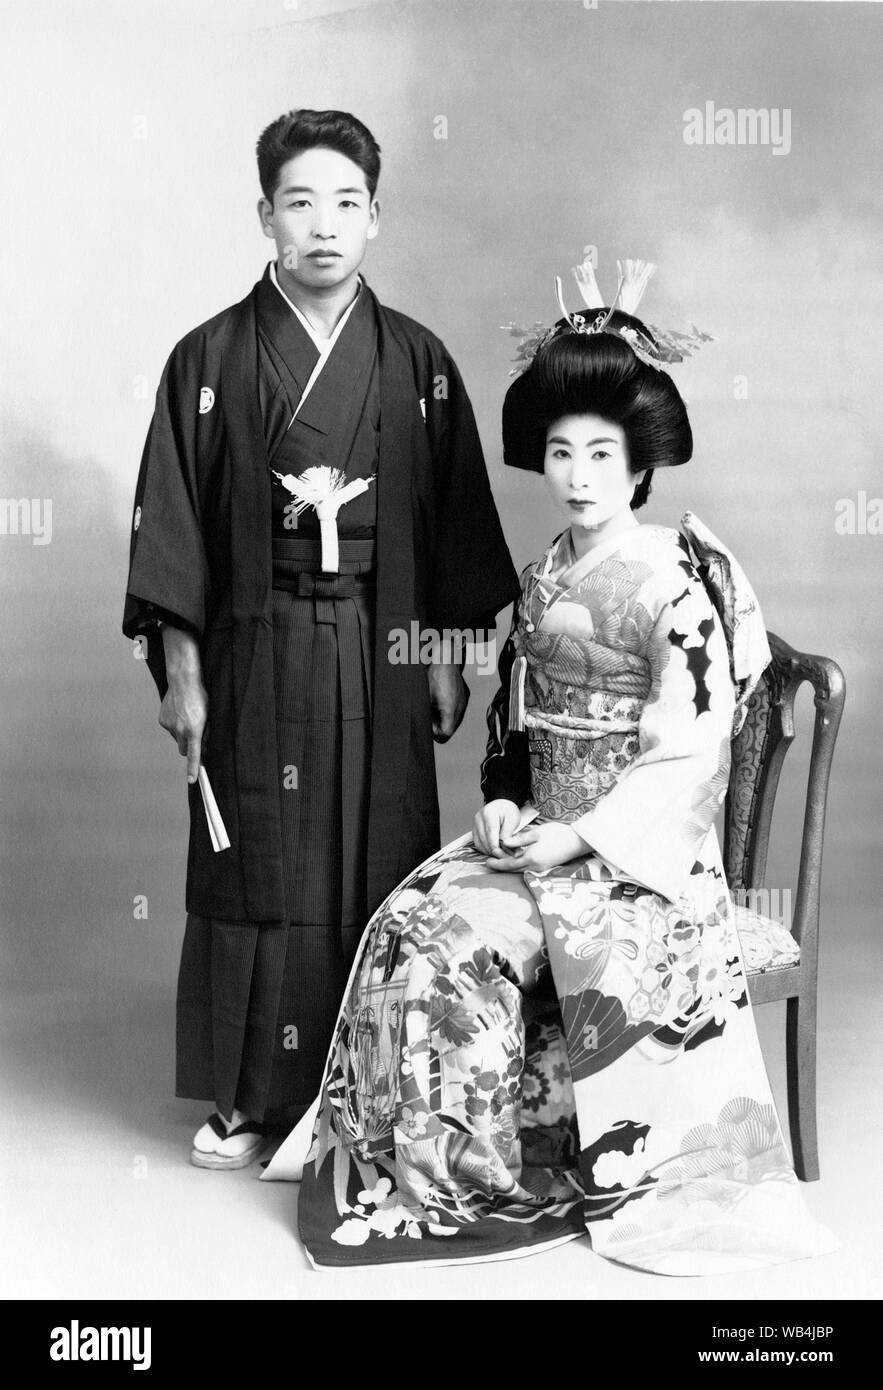 [ 1930 Japon - Japonais mariés ] - portrait de mariage avec les deux époux et épouse portant des vêtements de style traditionnel. 20e siècle Tirage argentique d'époque. Banque D'Images